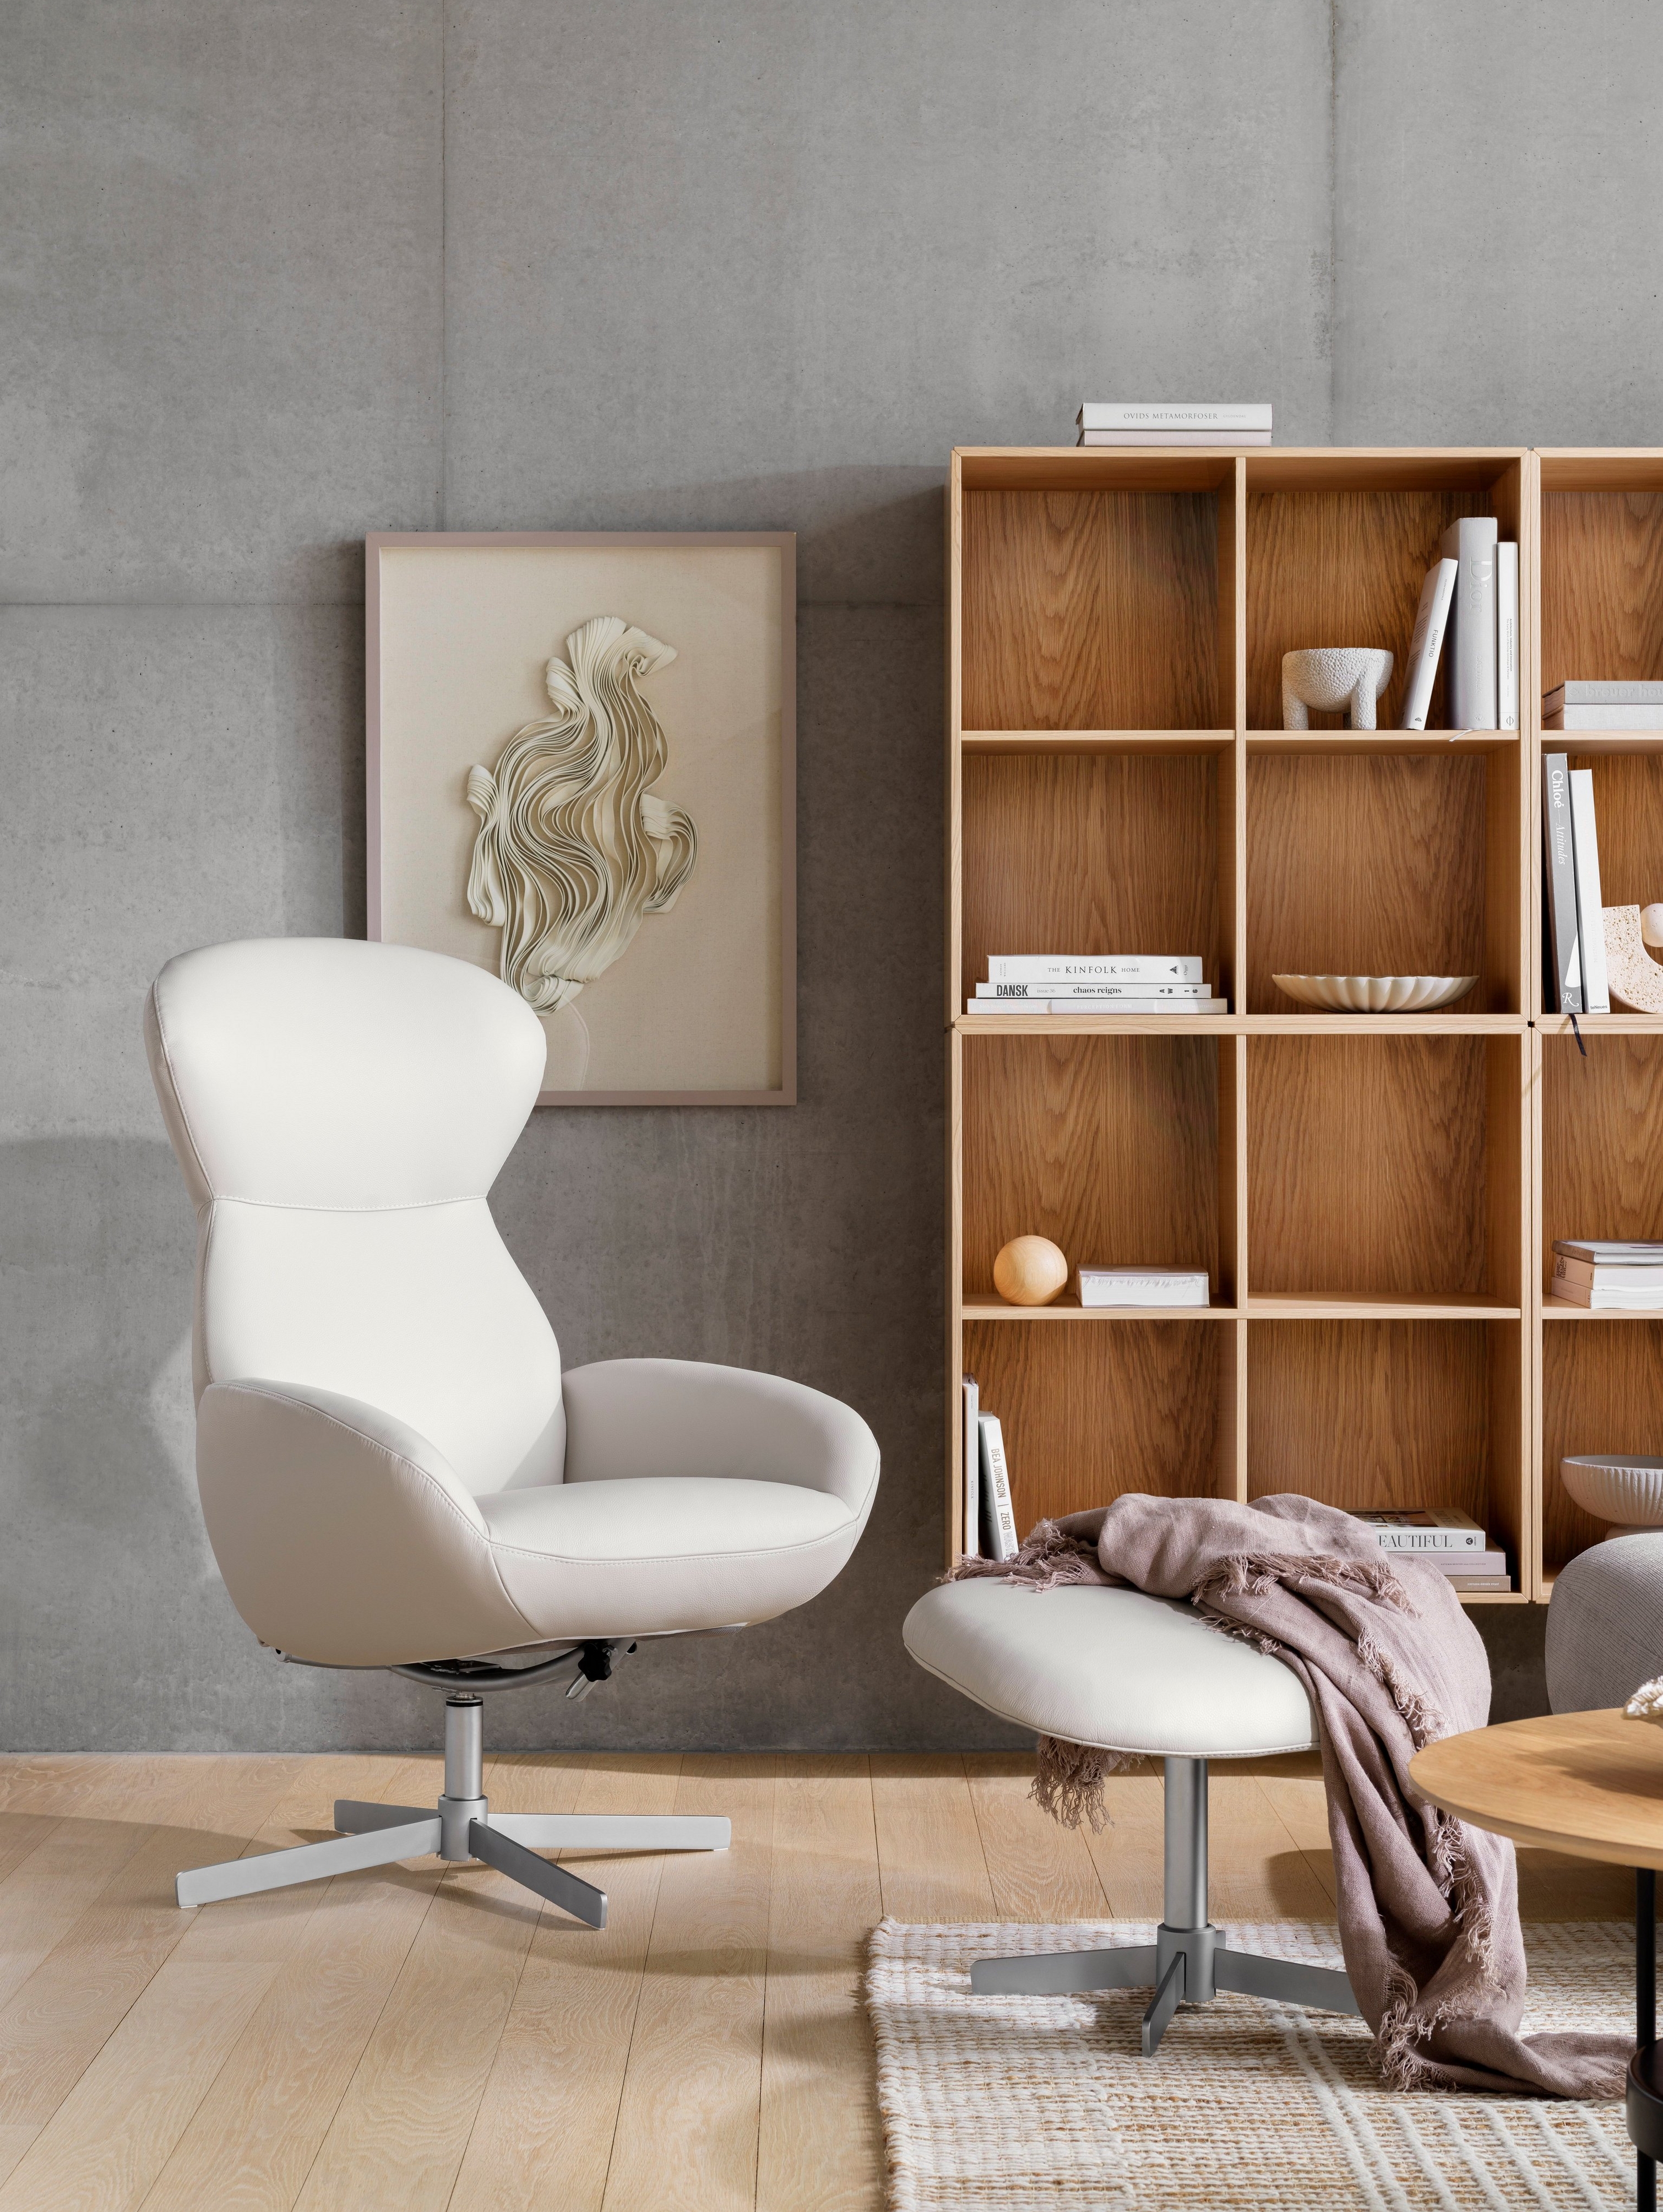 Fauteuil Athena blanc avec repose-pieds et bibliothèque Como en bois dans une pièce confortable.